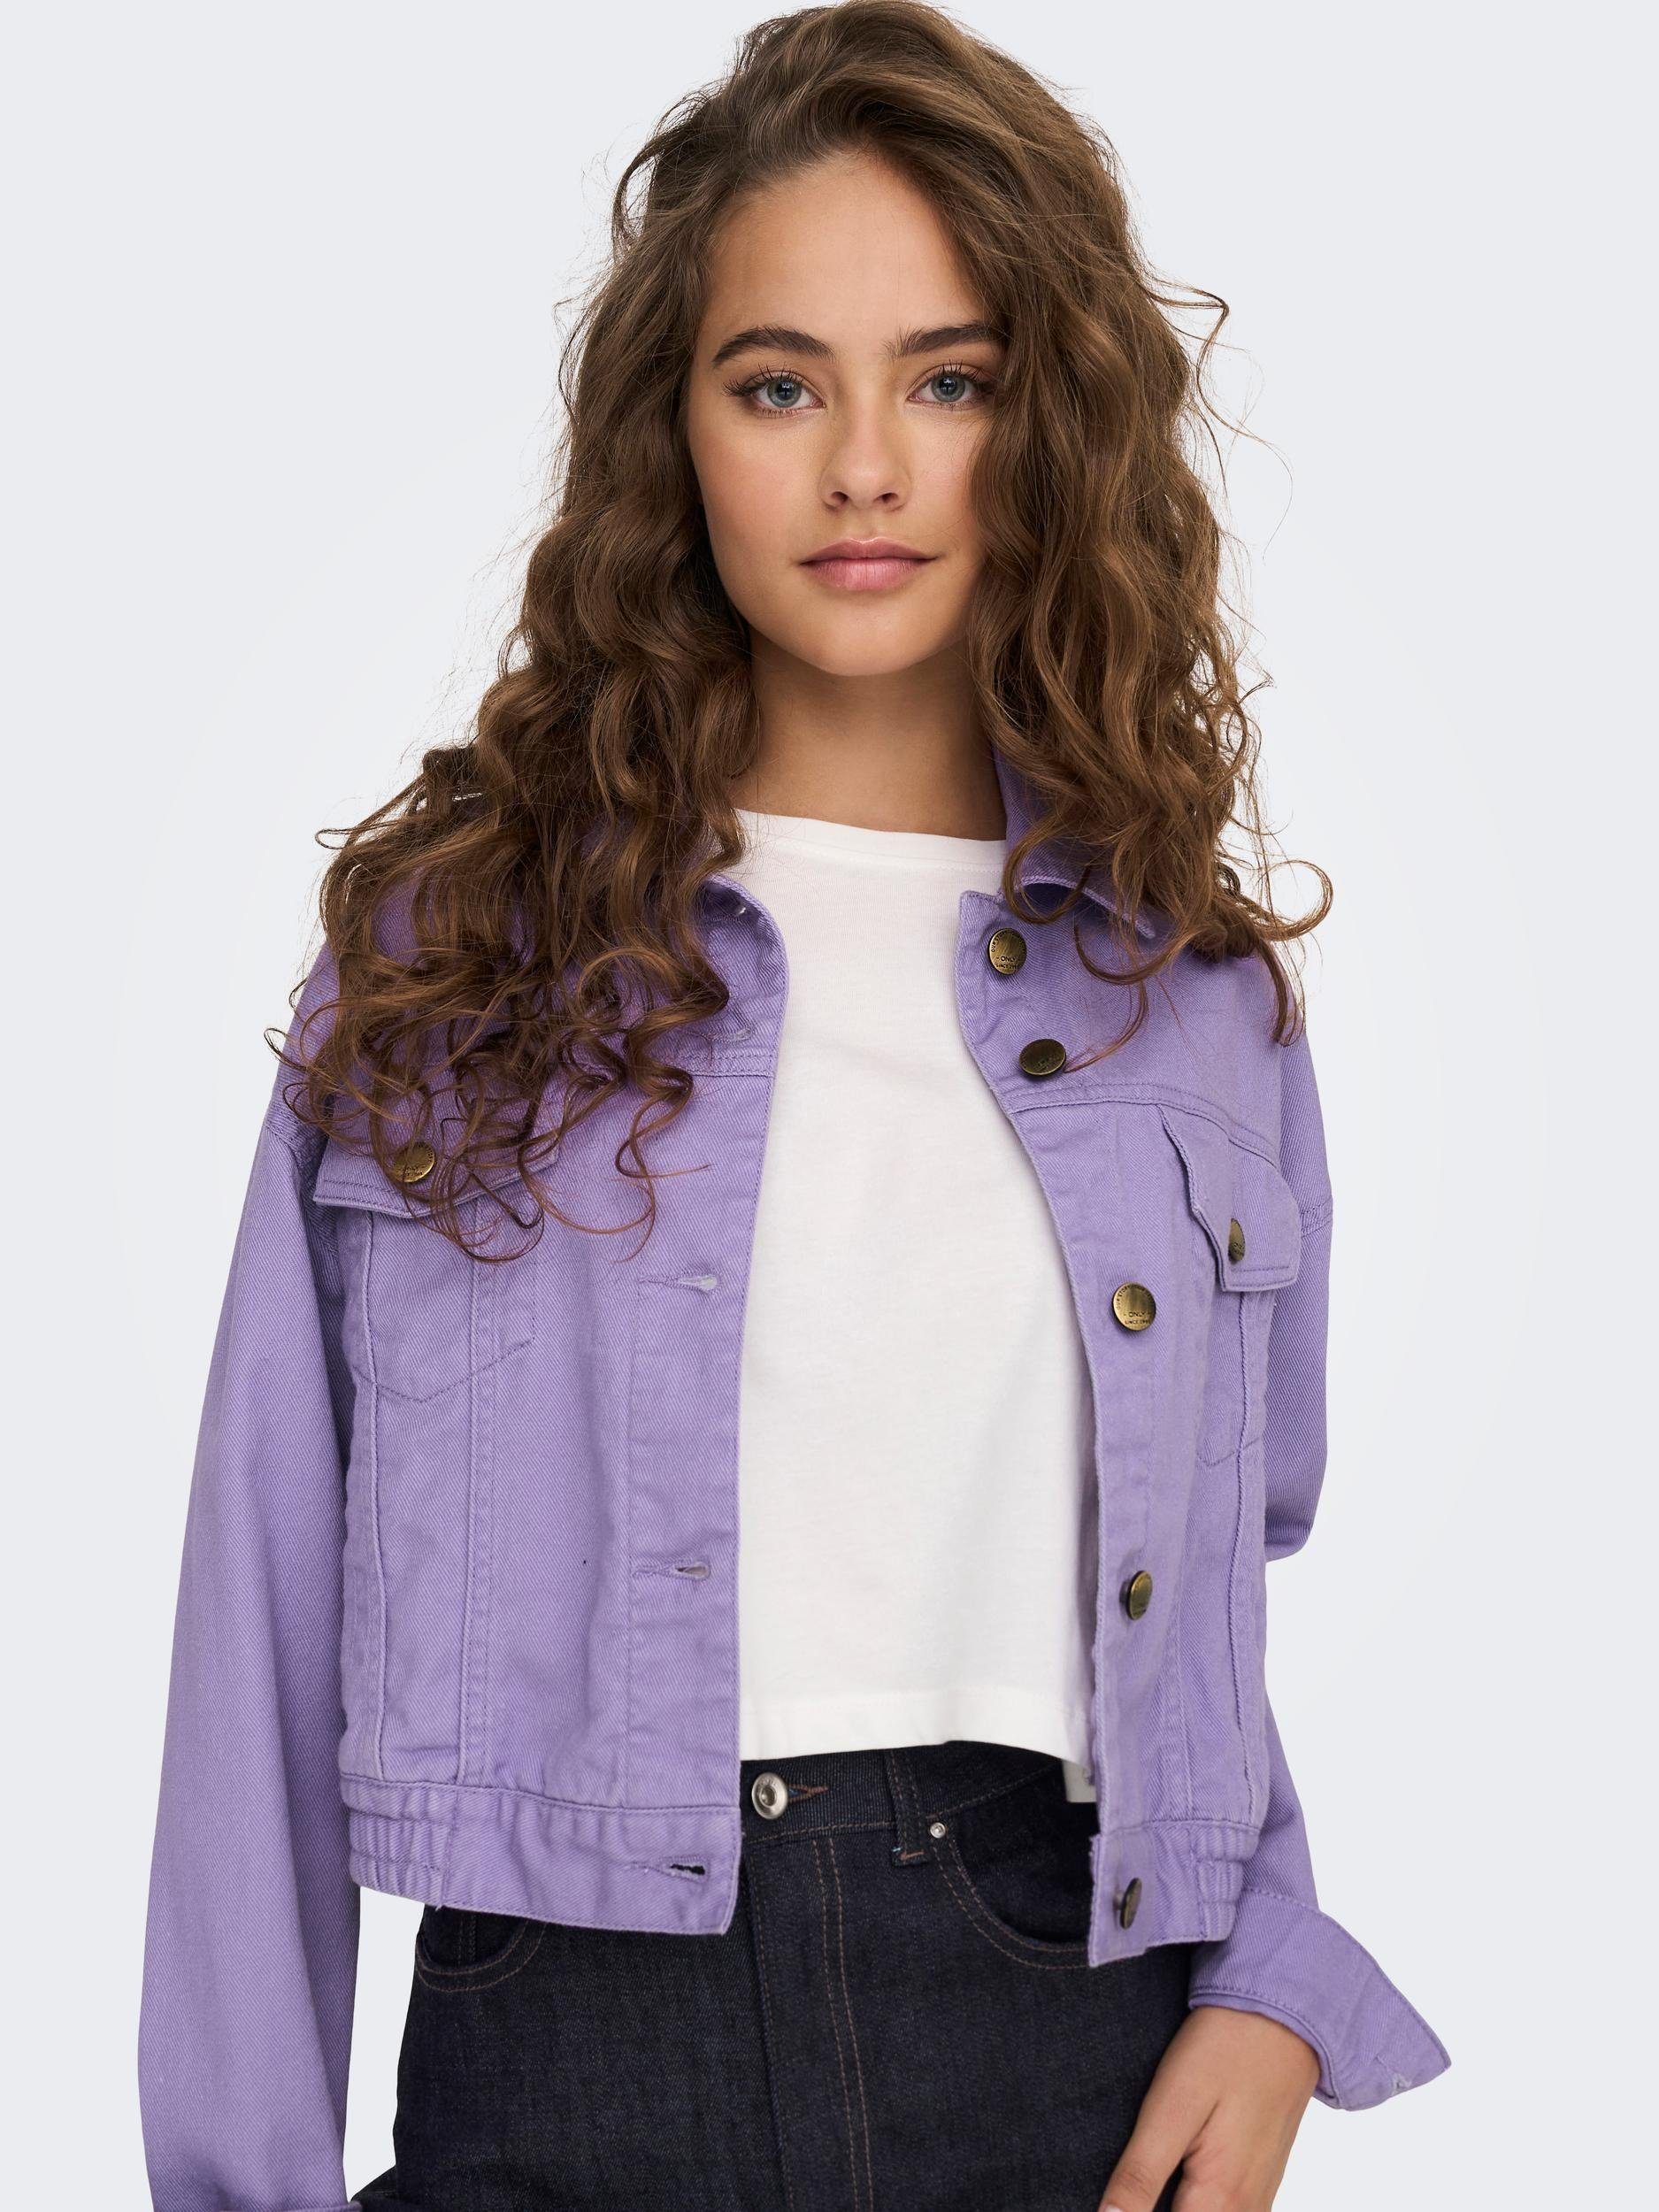 Jeansjacke purple ONLY paisley